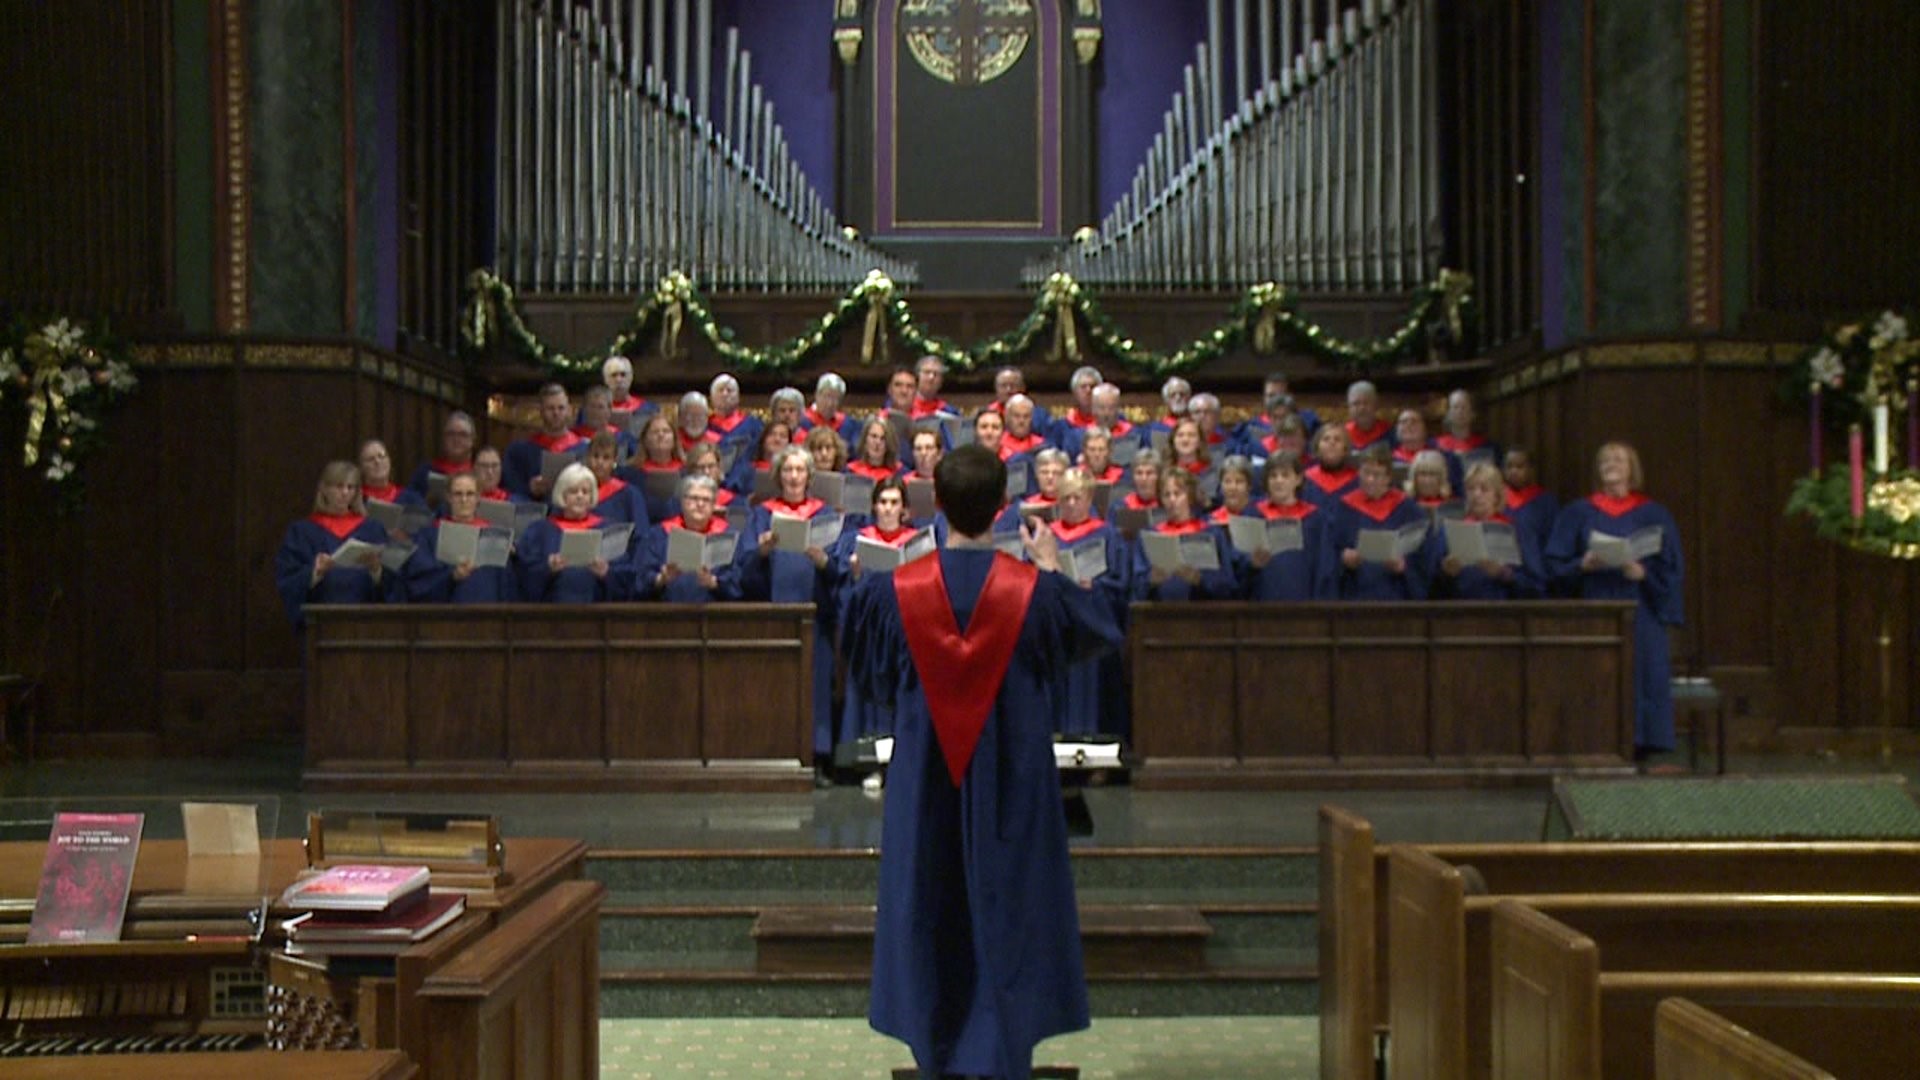 First Presbyterian Choir of Davenport Sings Silent Night